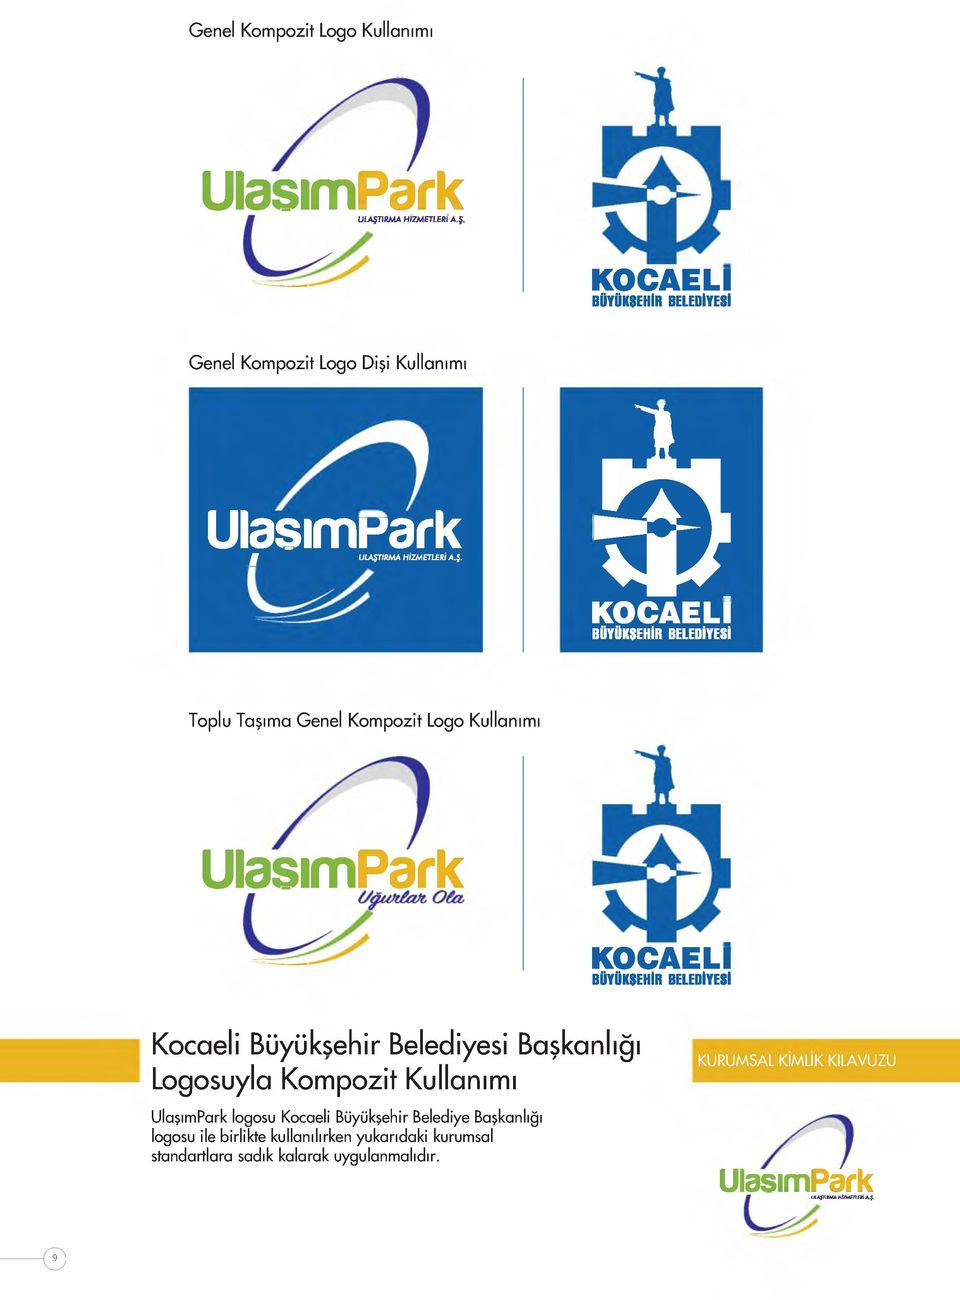 Genel Kompozit Logo Kullanımı UlasımPark KOCAELİ BÜYÜKSEHİR BELEDİYESİ Kocaeli Büyüksehir Belediyesi Başkanlığı Logosuyla